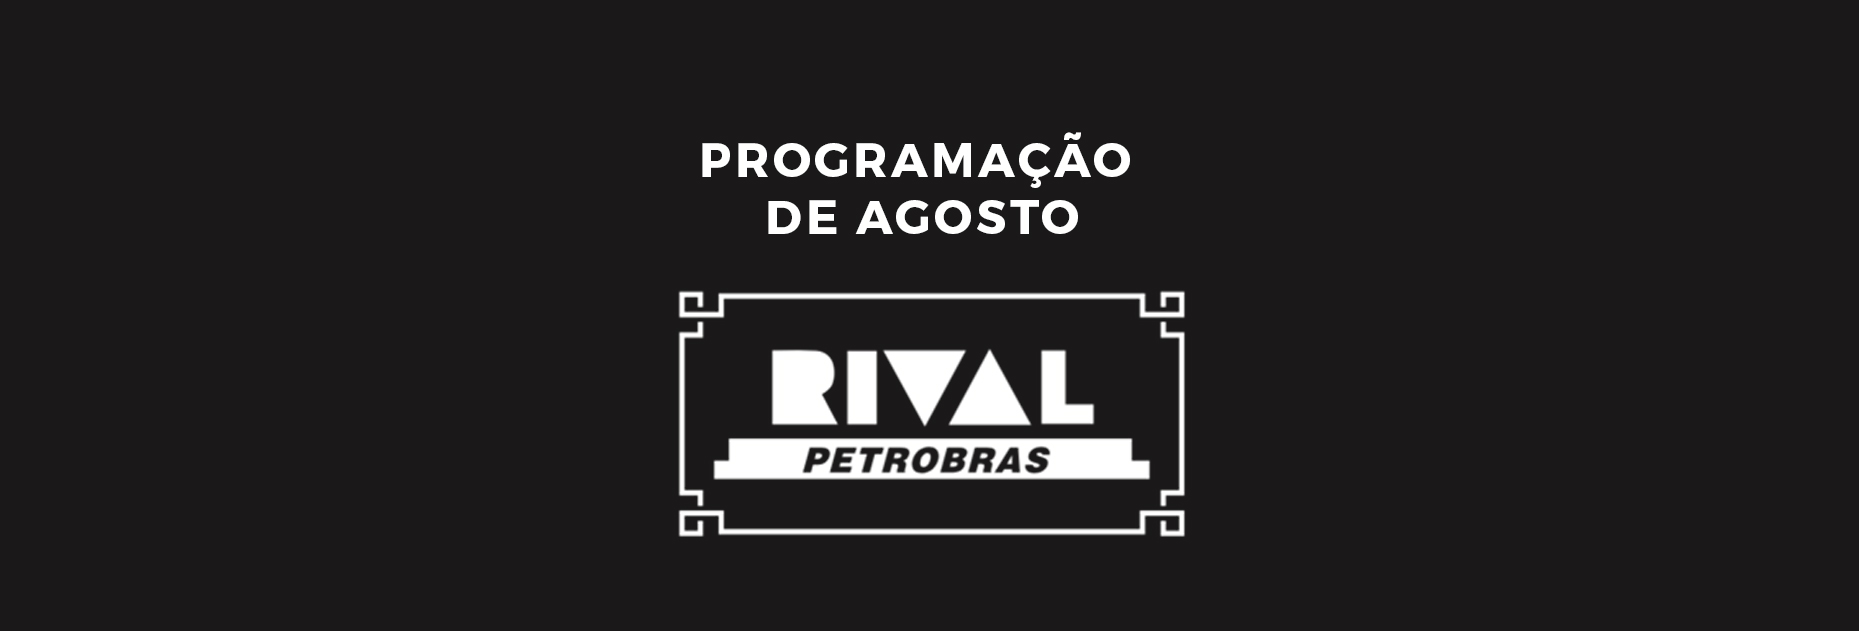 Homenagens e Grandes Shows em Agosto no Teatro Rival Petrobras